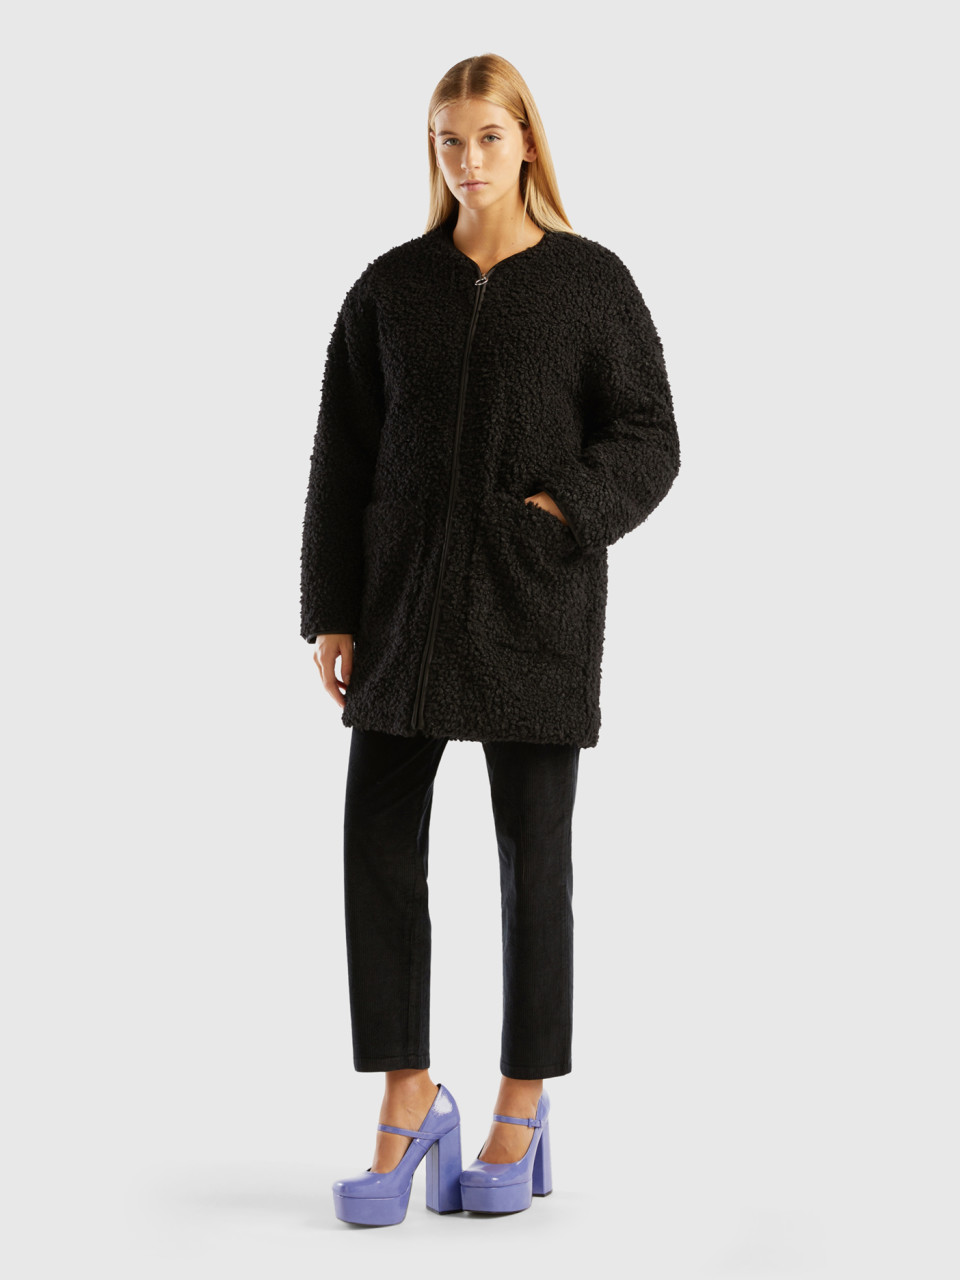 Benetton, Faux Fur Teddy Coat, Black, Women